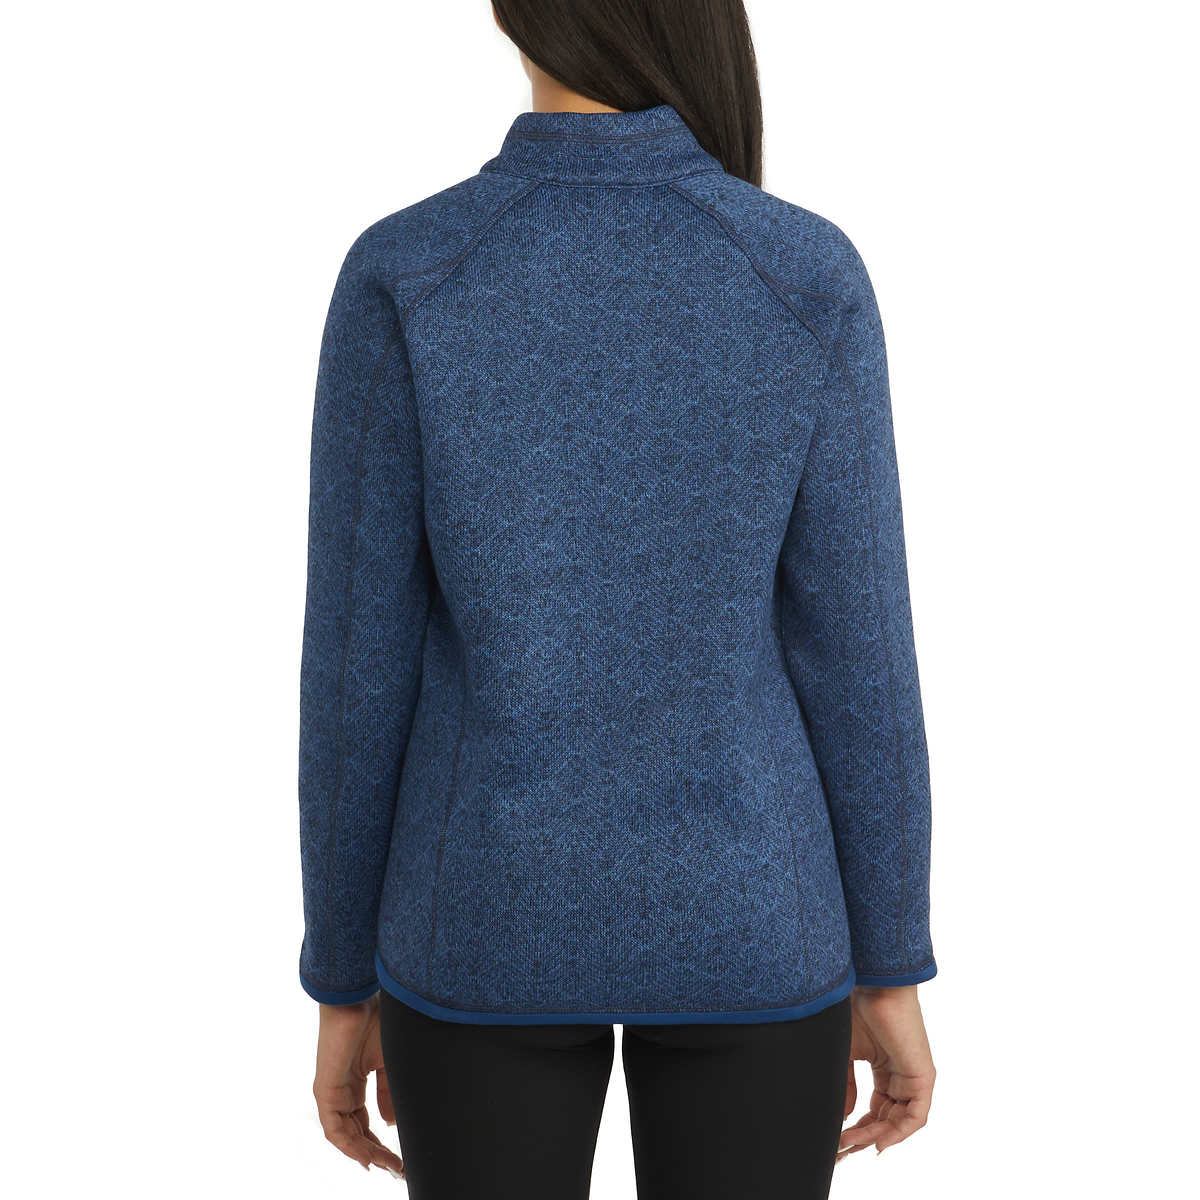 Storm Pack Women's Quarter Zip Comfort Fit Cozy  Fleece Sweater